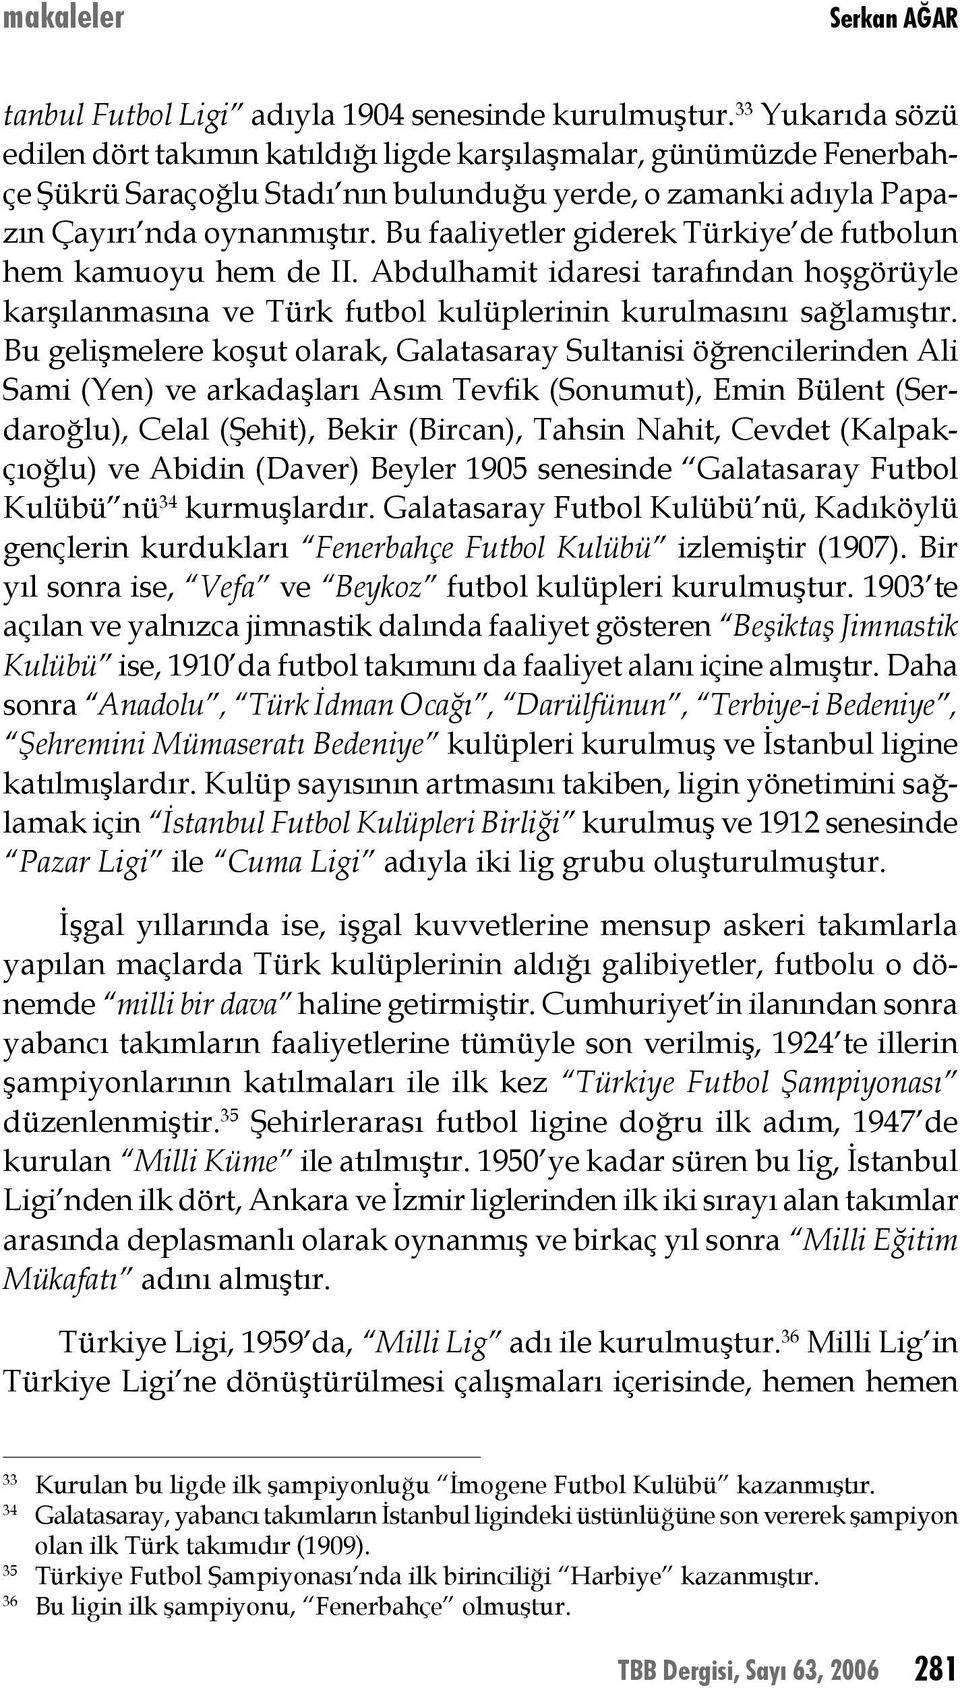 Bu faaliyetler giderek Türkiye de futbolun hem kamuoyu hem de II. Abdulhamit idaresi tarafından hoşgörüyle karşılanmasına ve Türk futbol kulüplerinin kurulmasını sağlamıştır.